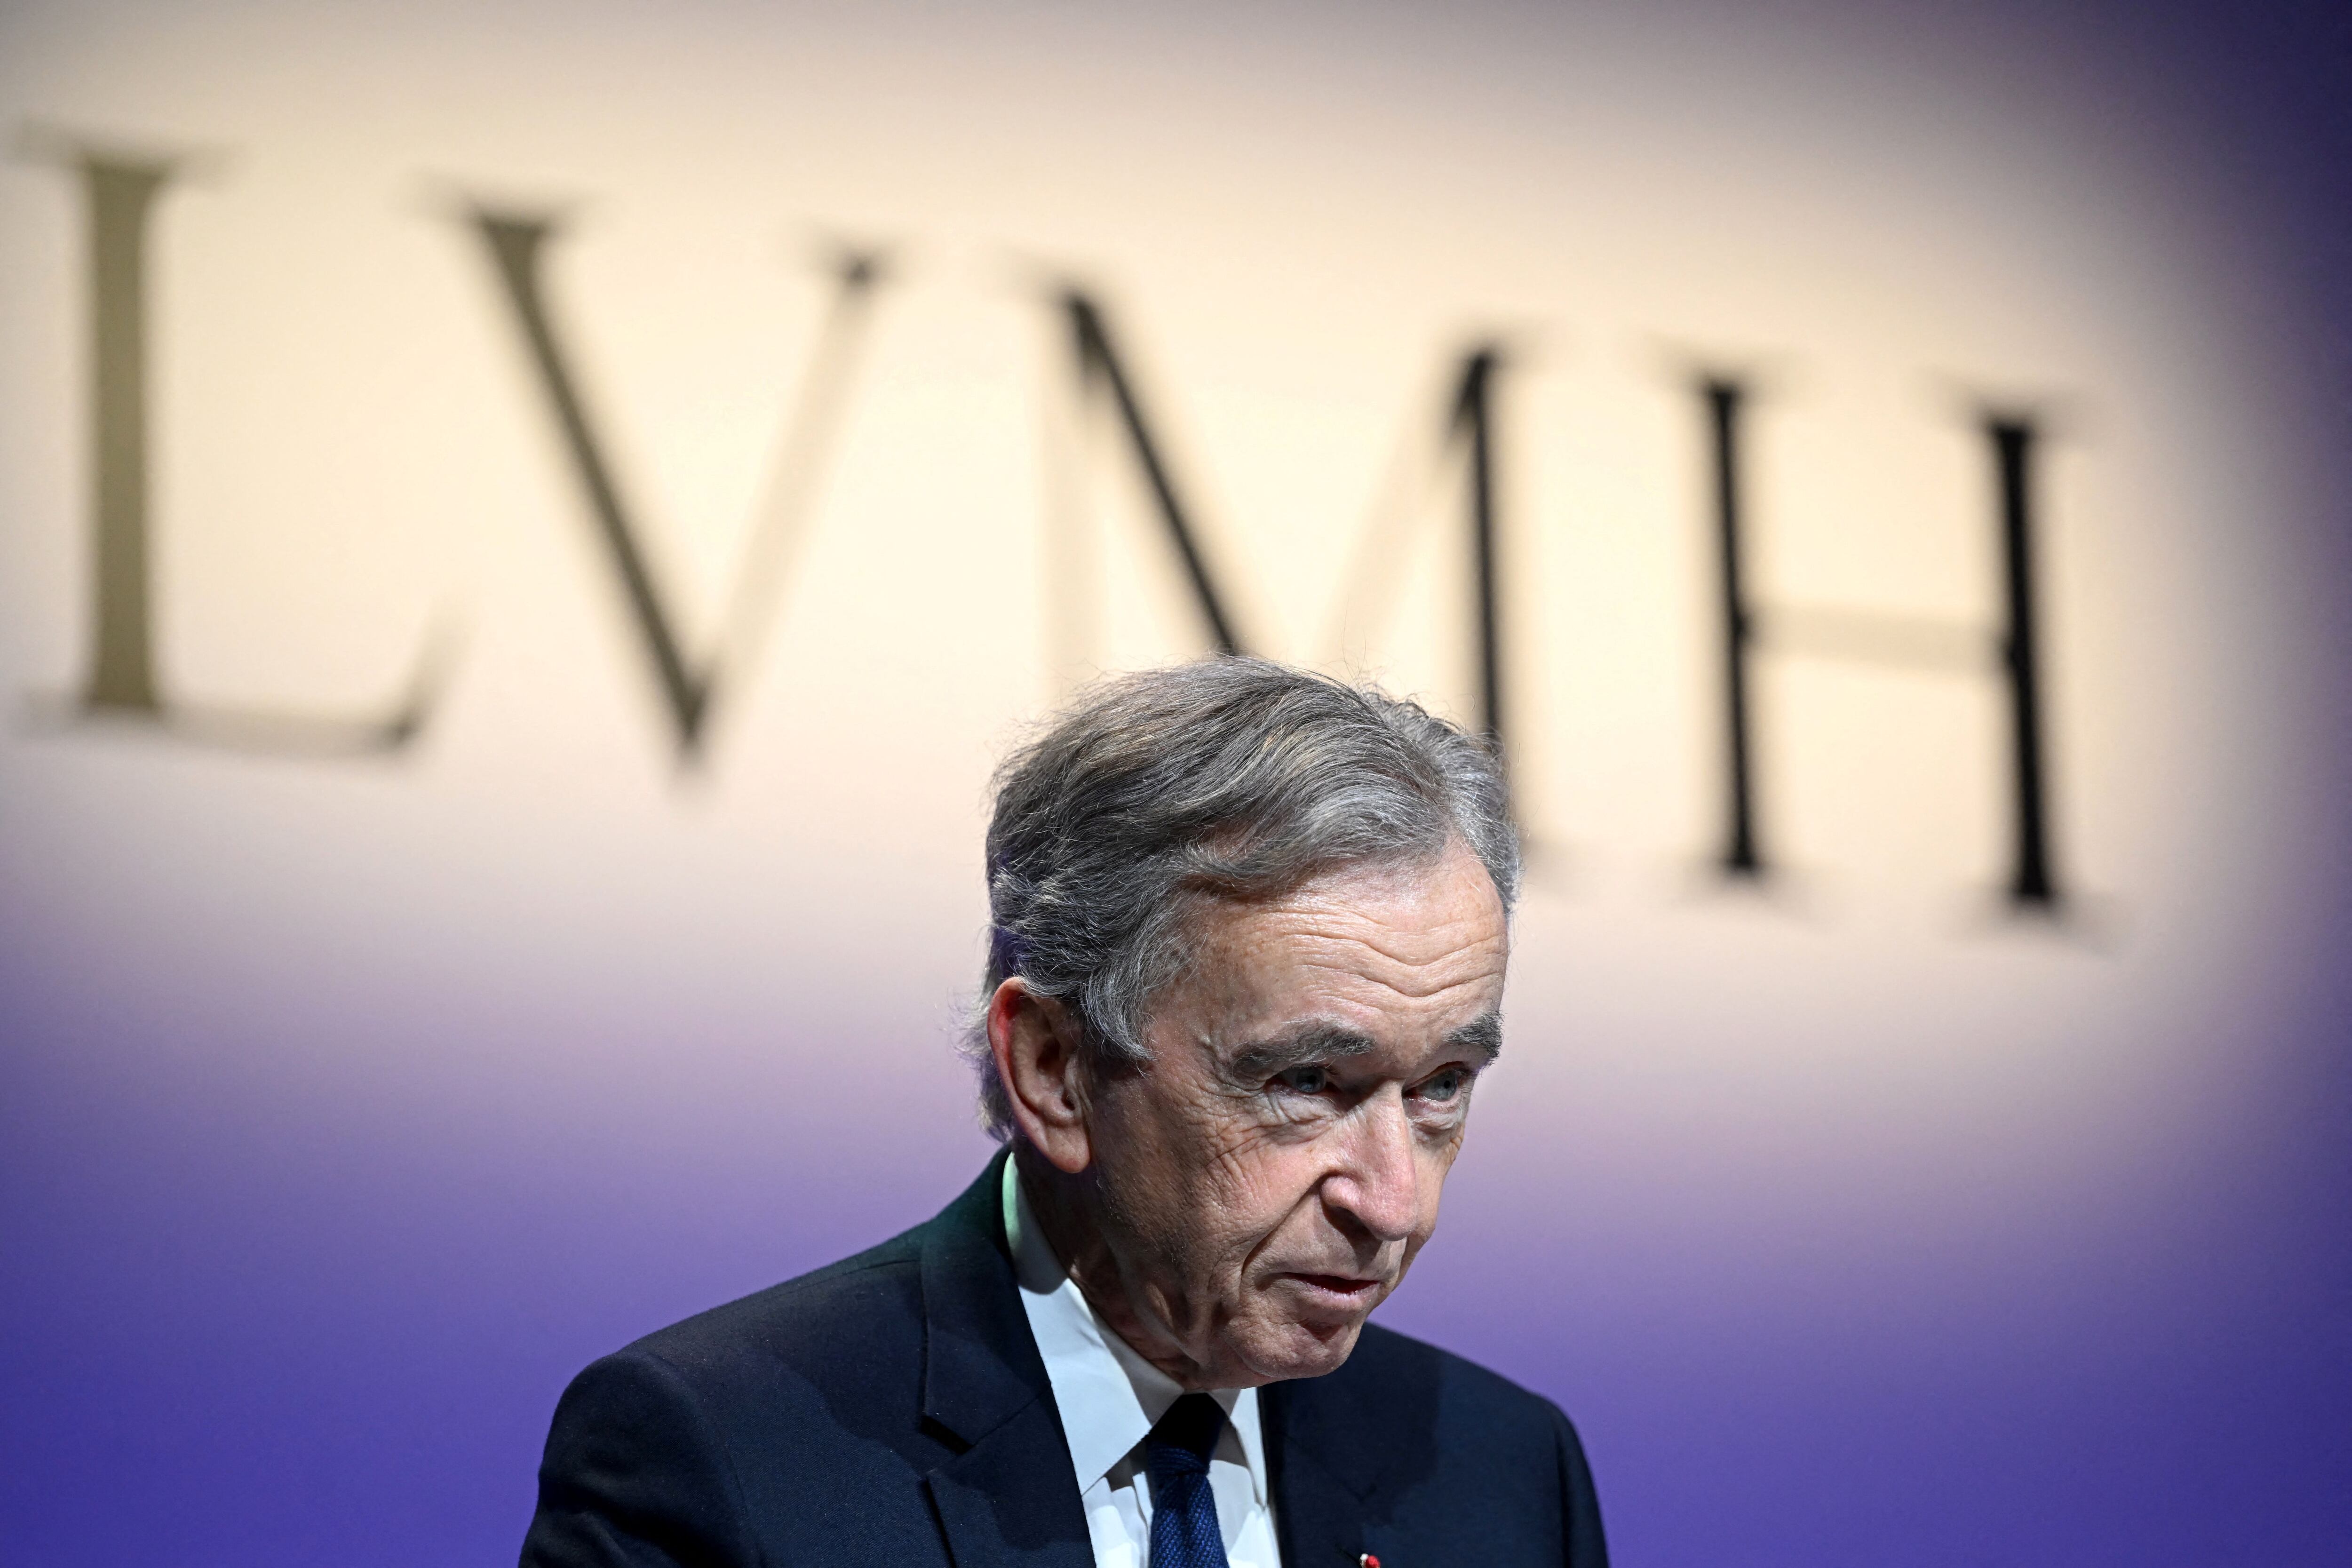 Why LVMH Moët Hennessy - Louis Vuitton, Société Européenne (EPA:MC) Is A  Financially Healthy Company